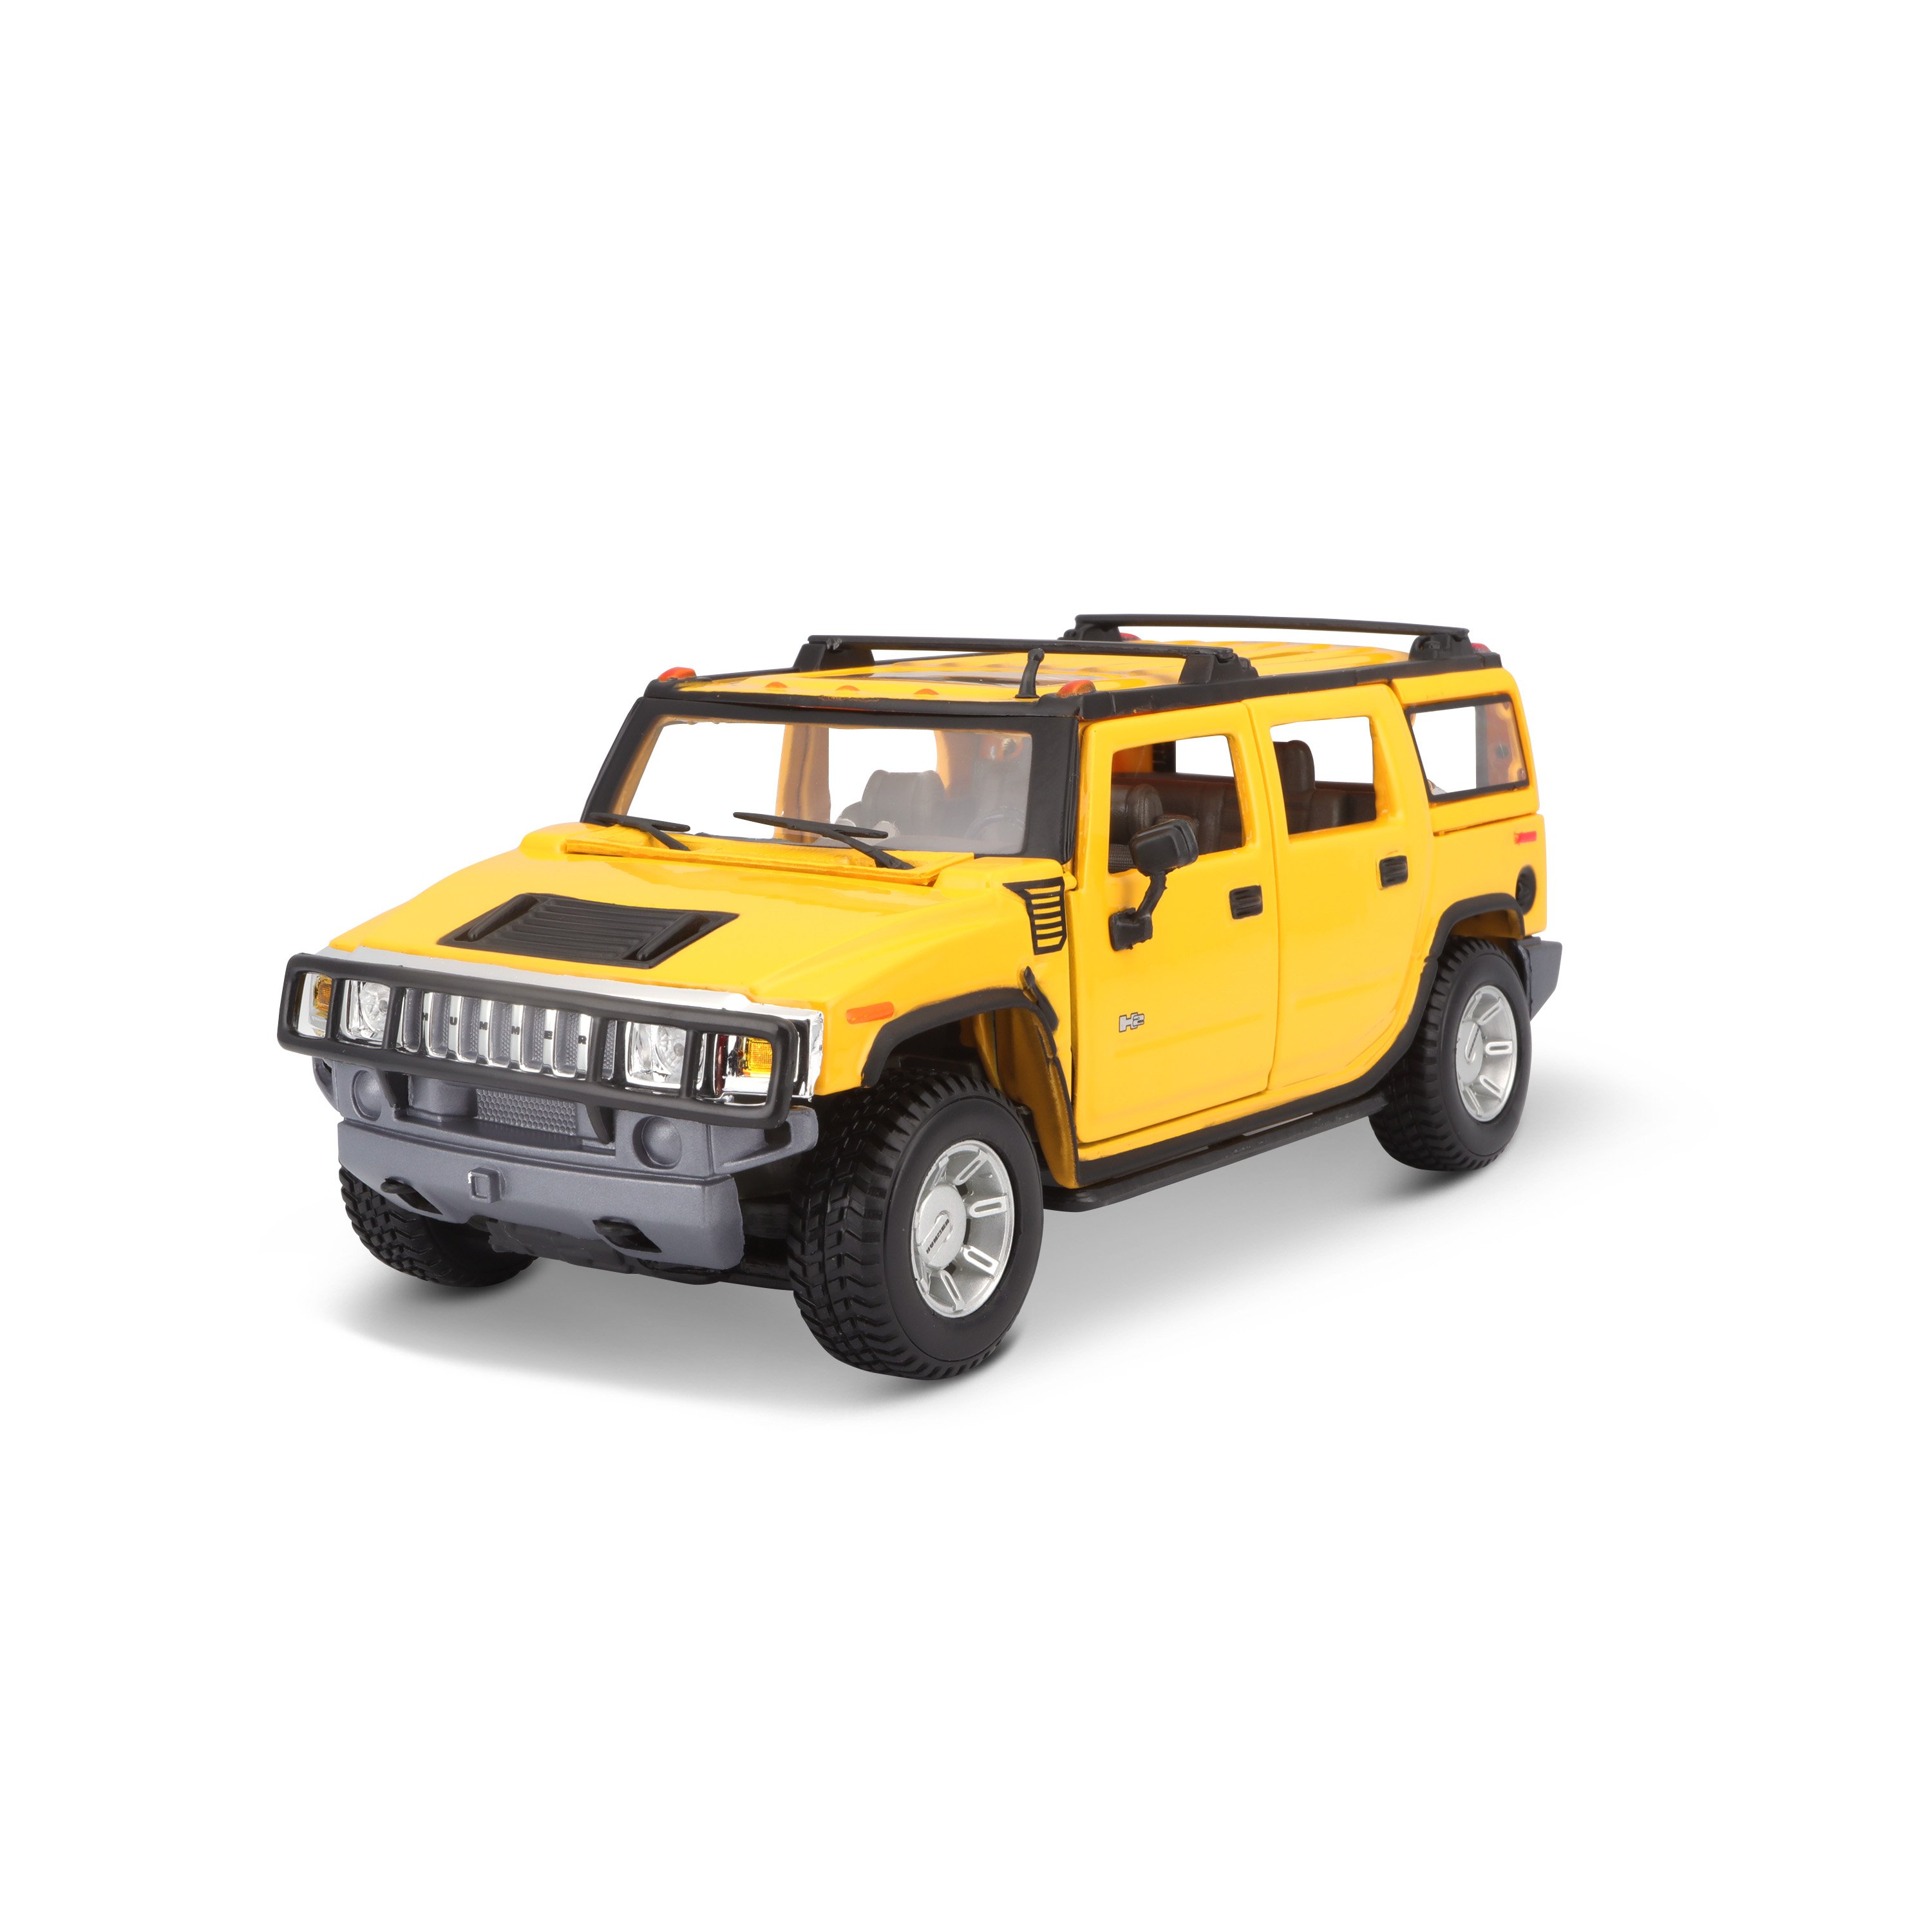 Игровая автомодель Maisto Hummer H2 SUV 2003, жёлтый, 1:27 (31231 yellow) - фото 2